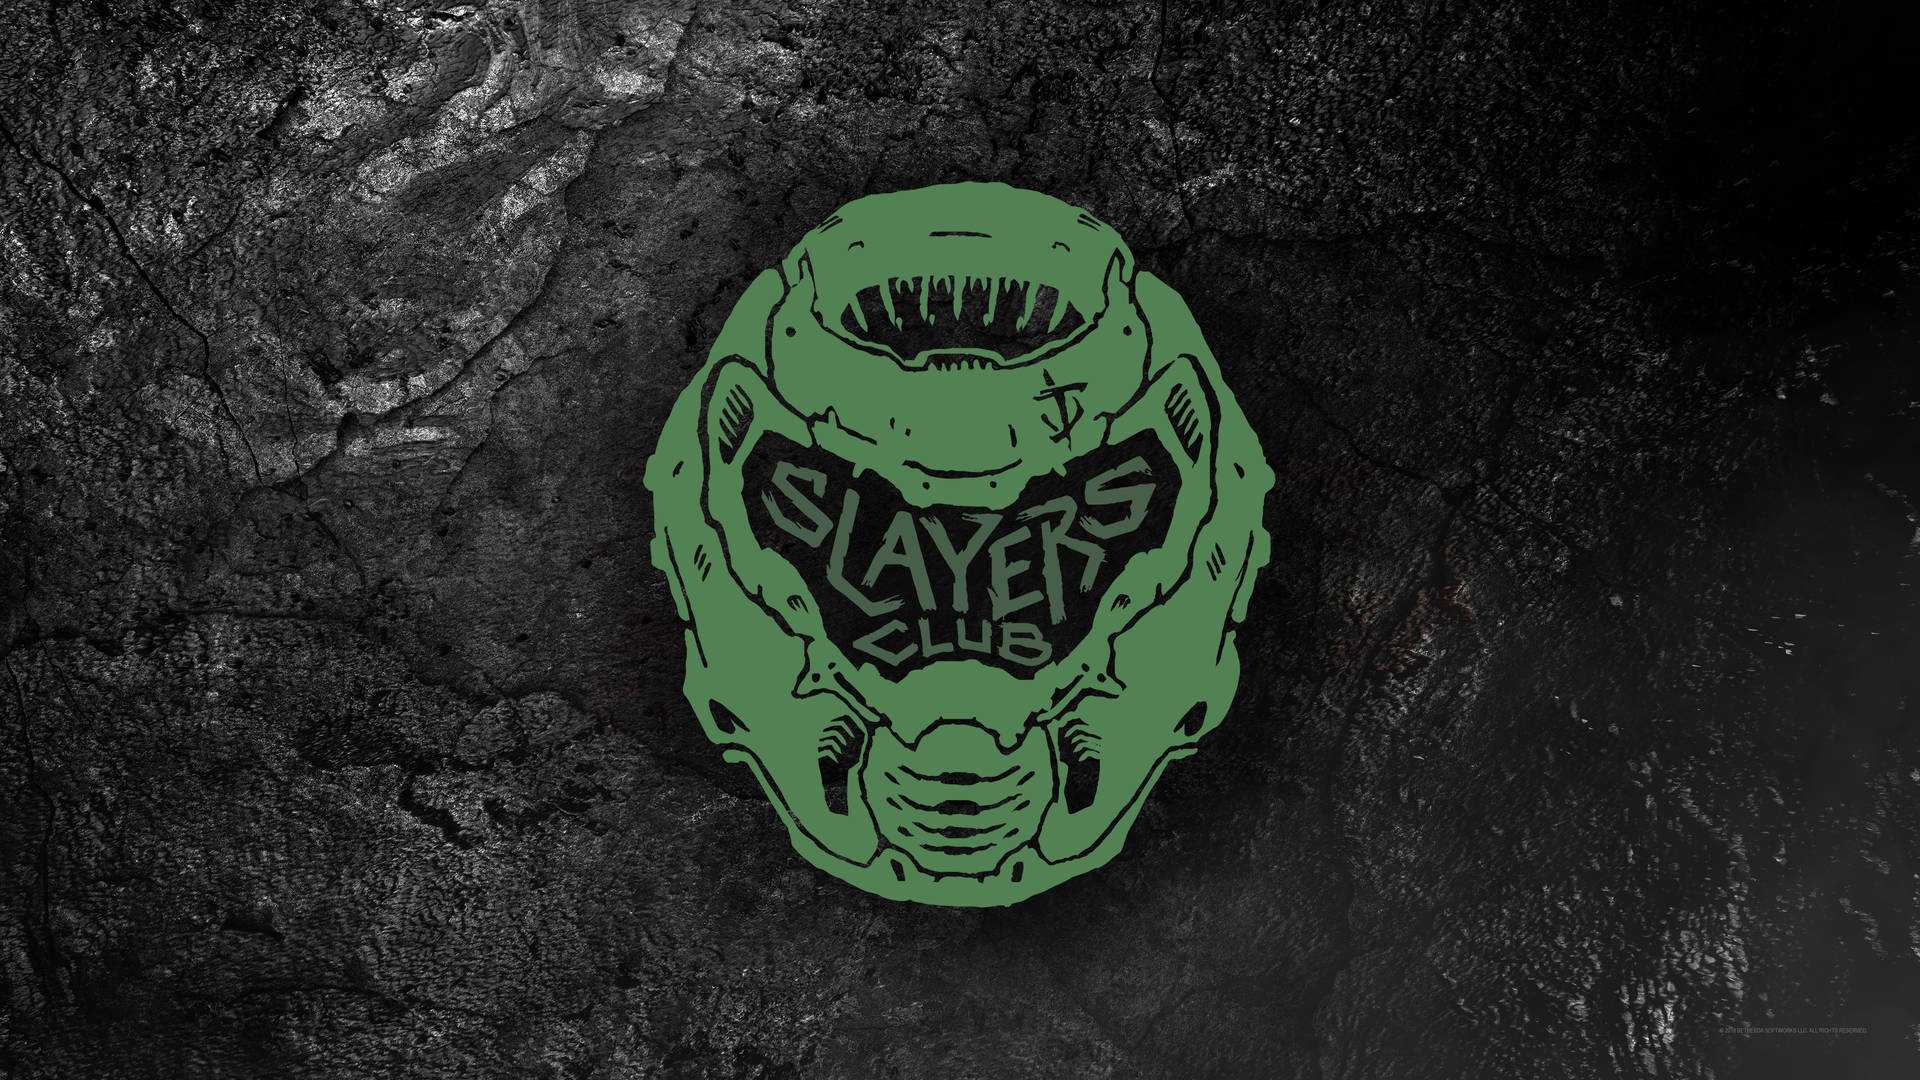 Slayers Club Doom 4k